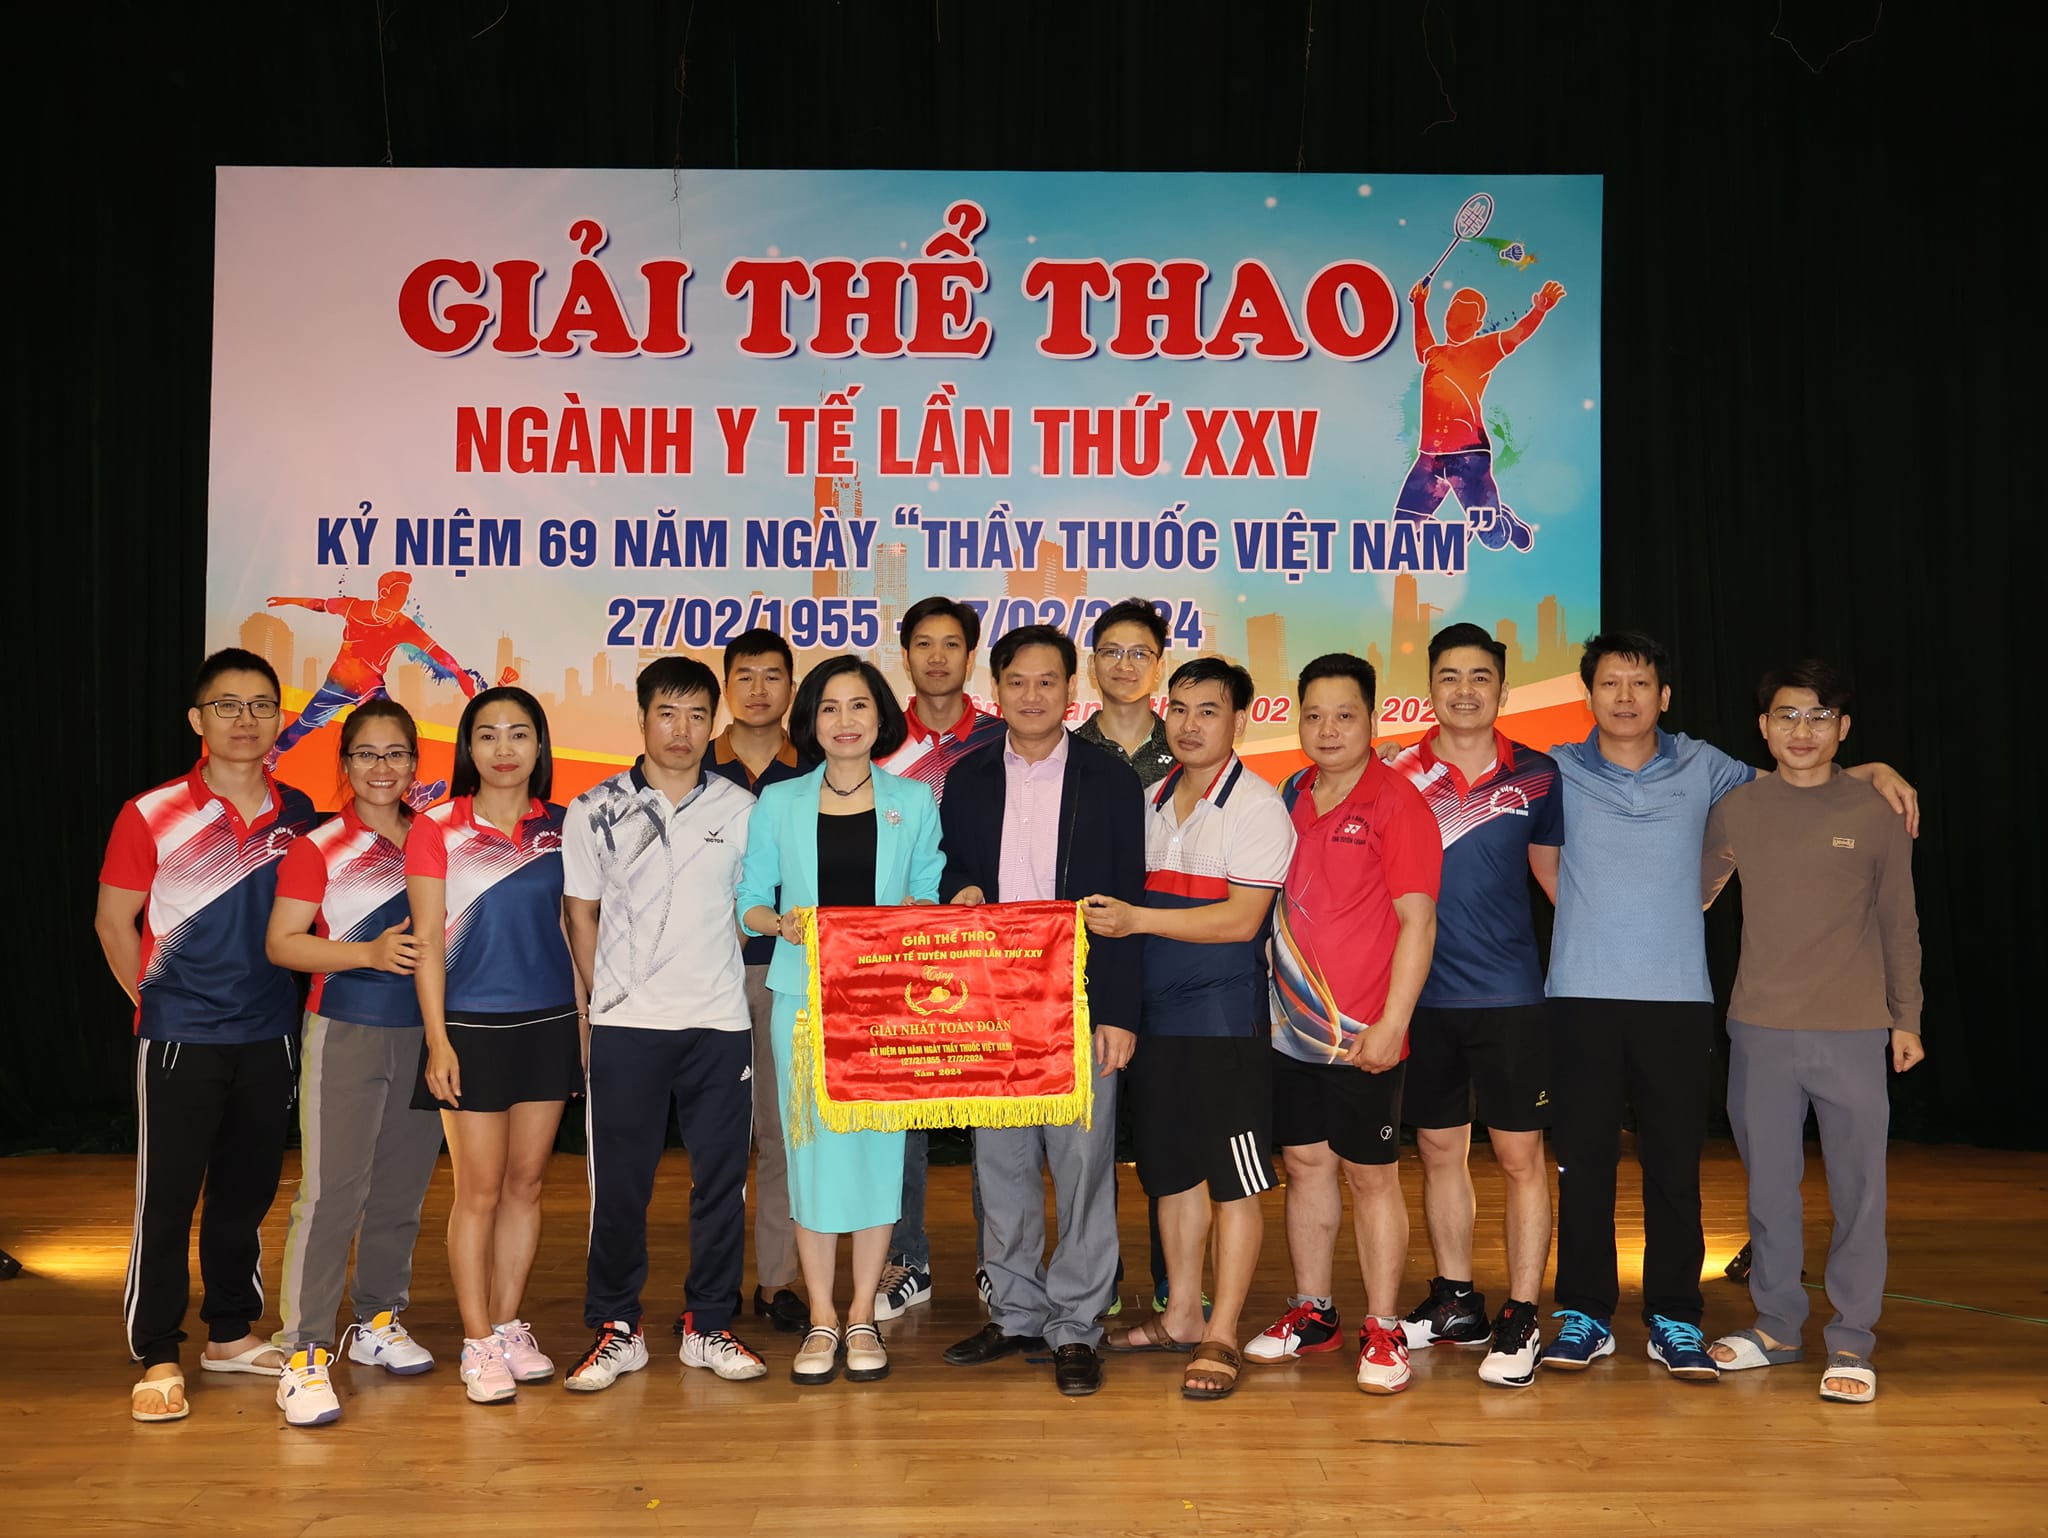 Bệnh viện đa khoa tỉnh Tuyên Quang đạt giải Nhất toàn đoàn tại Giải thể thao ngành Y tế